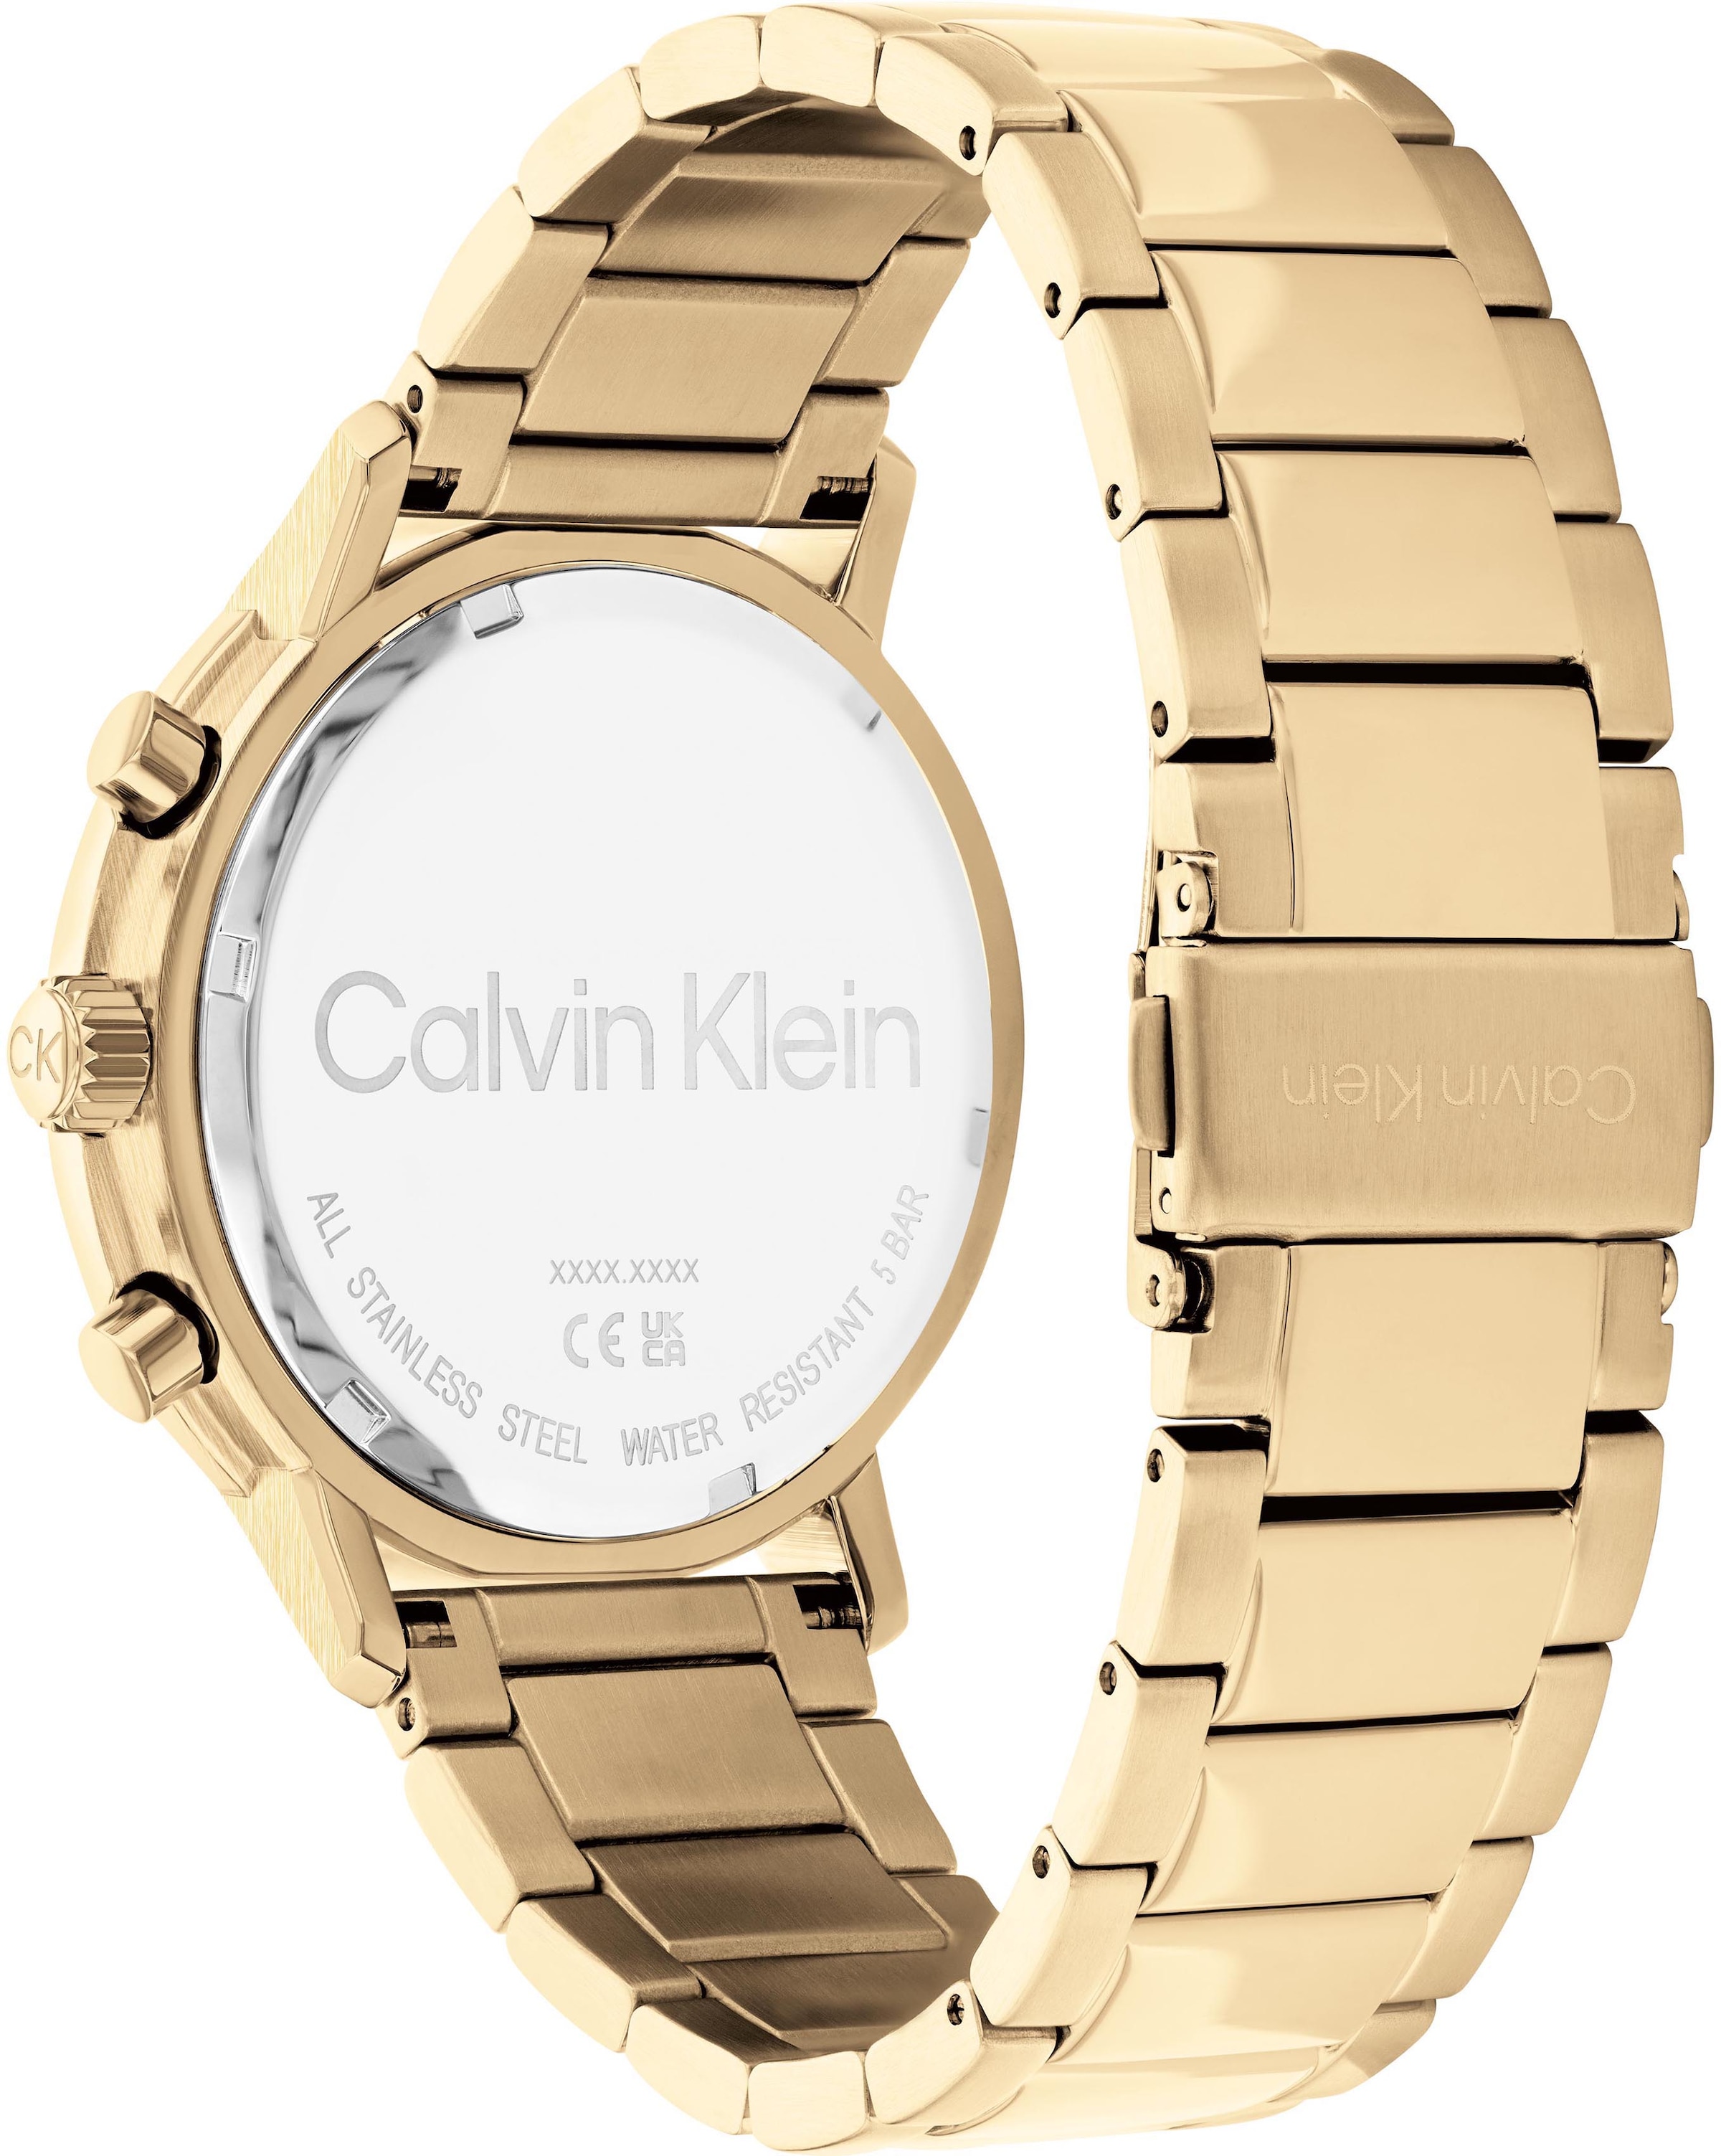 Calvin Klein Multifunktionsuhr kaufen »Gauge, 25200065« online